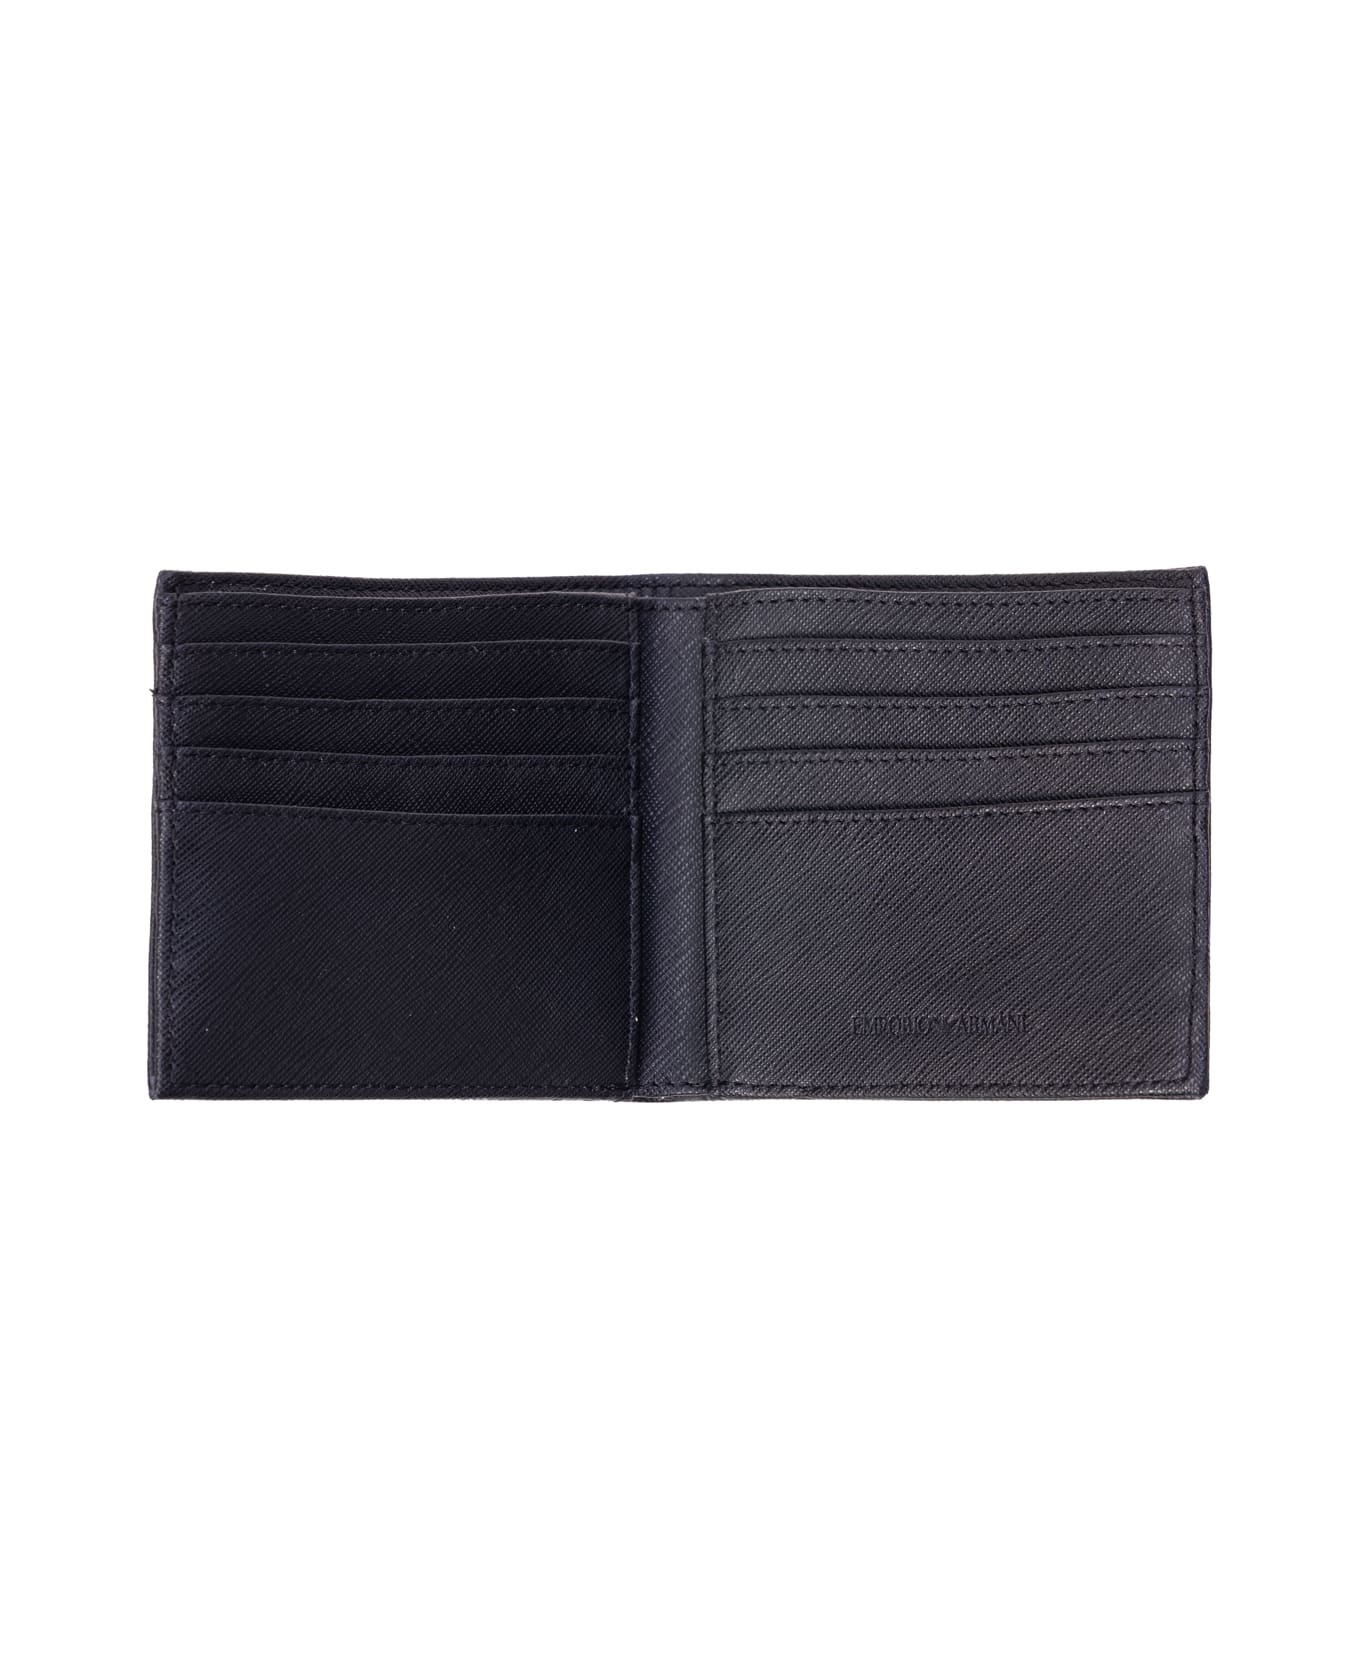 Emporio Armani Wallets Black - Black 財布